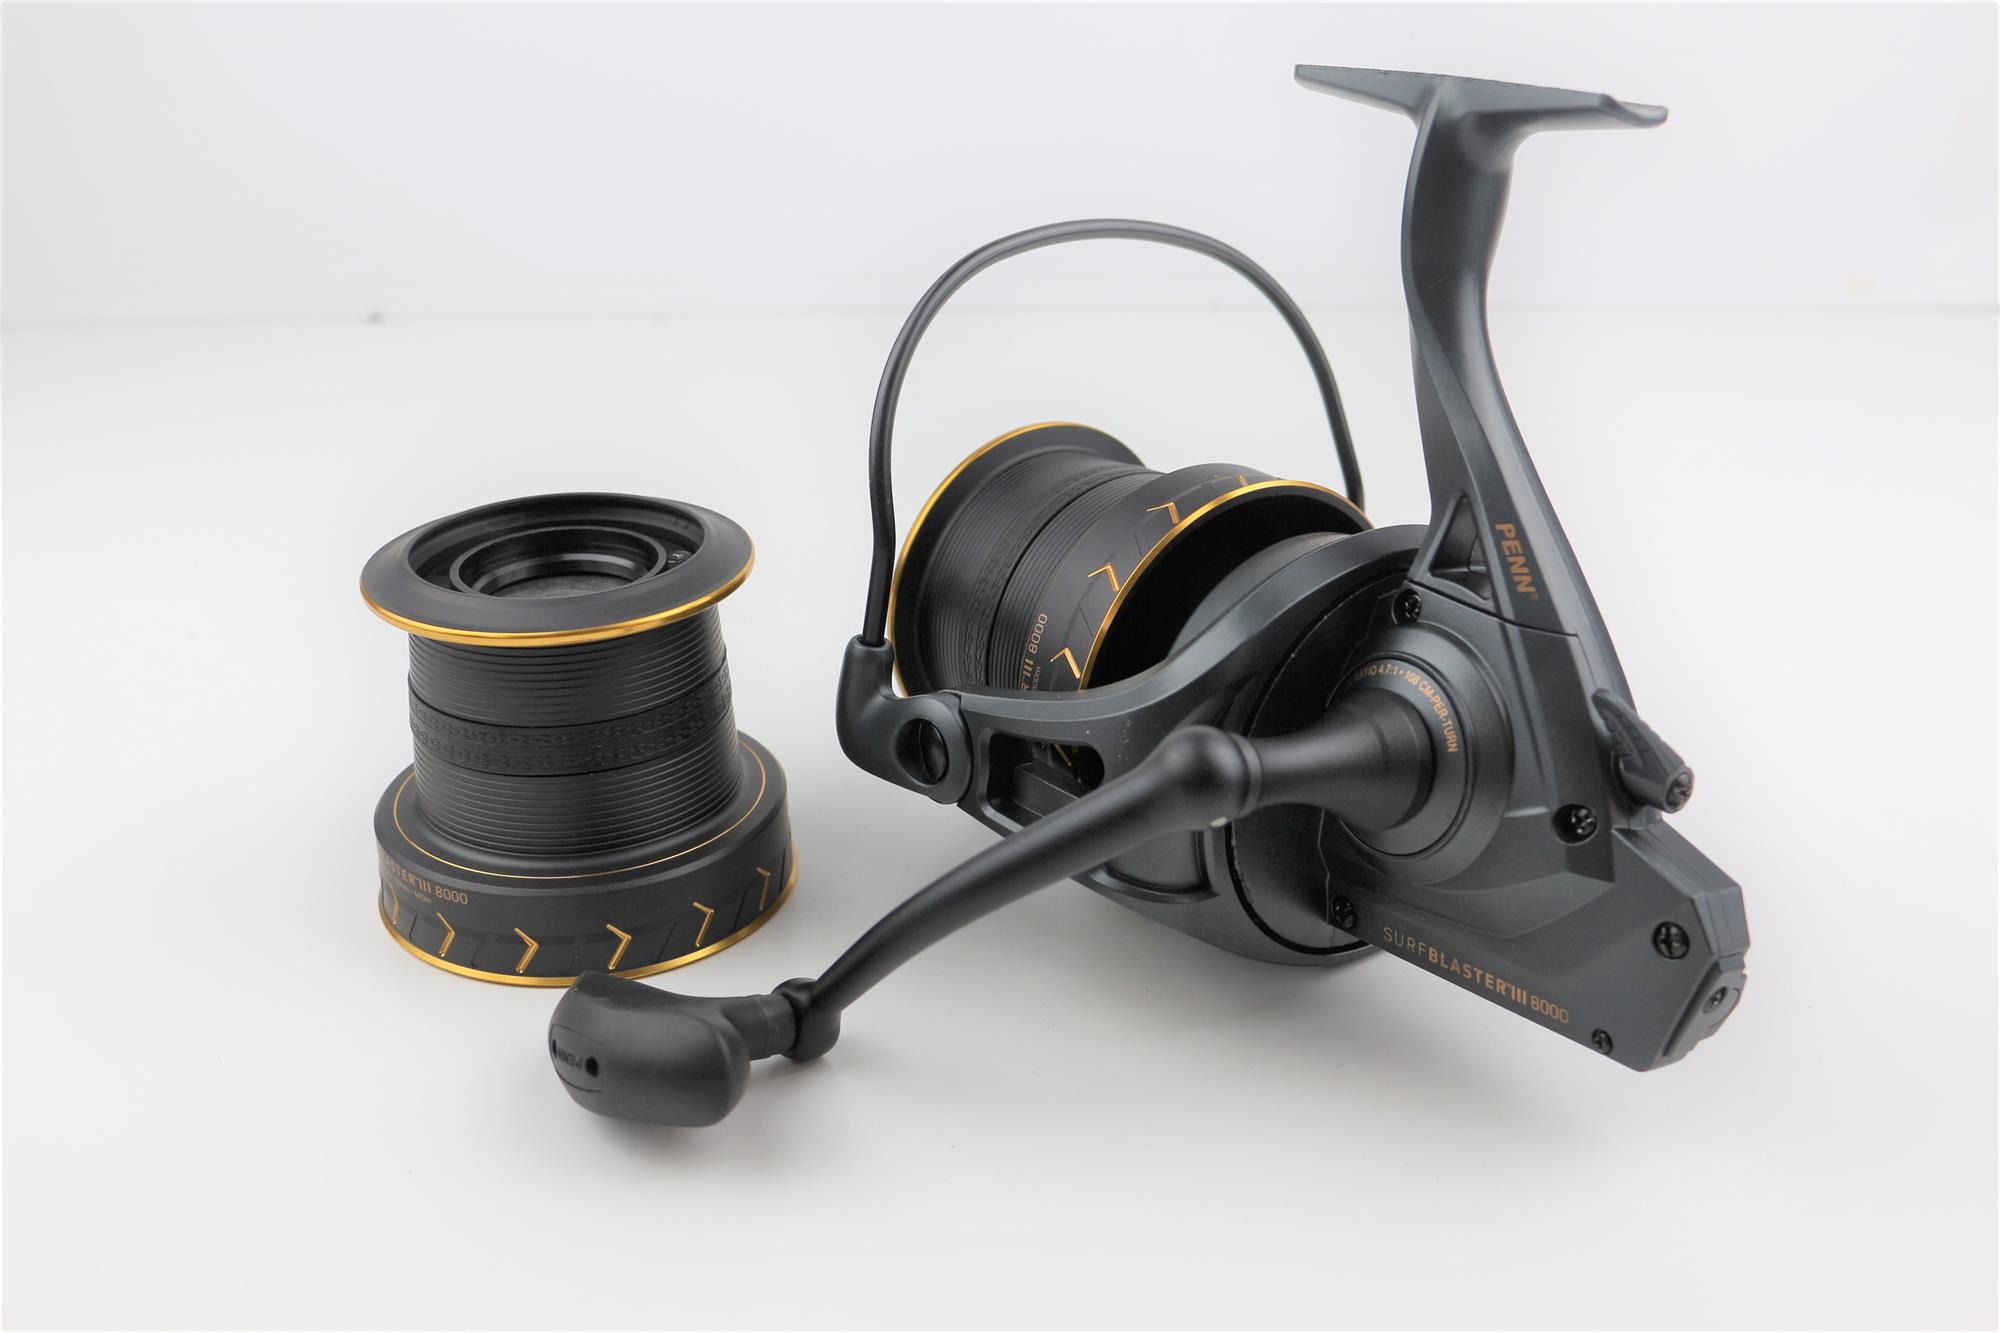 Buy PENN Surfblaster III 7000 Longcast Spinning Reel online at